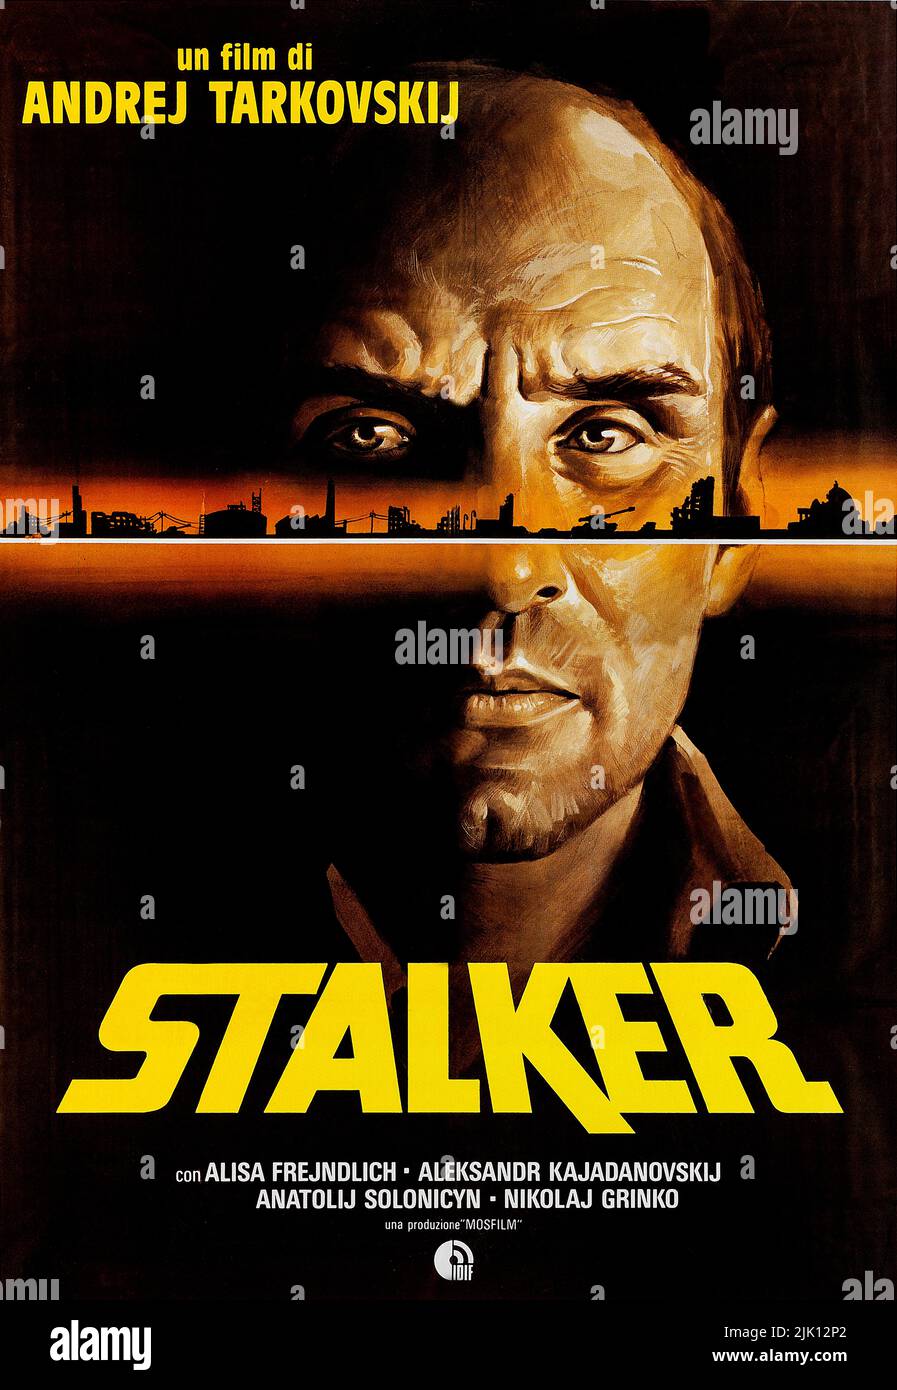 STALKER - Filmplakat (Russisch: Ста́лкер, 1979 sowjetischer Science-Fiction-Kunstfilm von Andrei Tarkovsky, geschrieben von Arkady und Boris Strugatsky Stockfoto